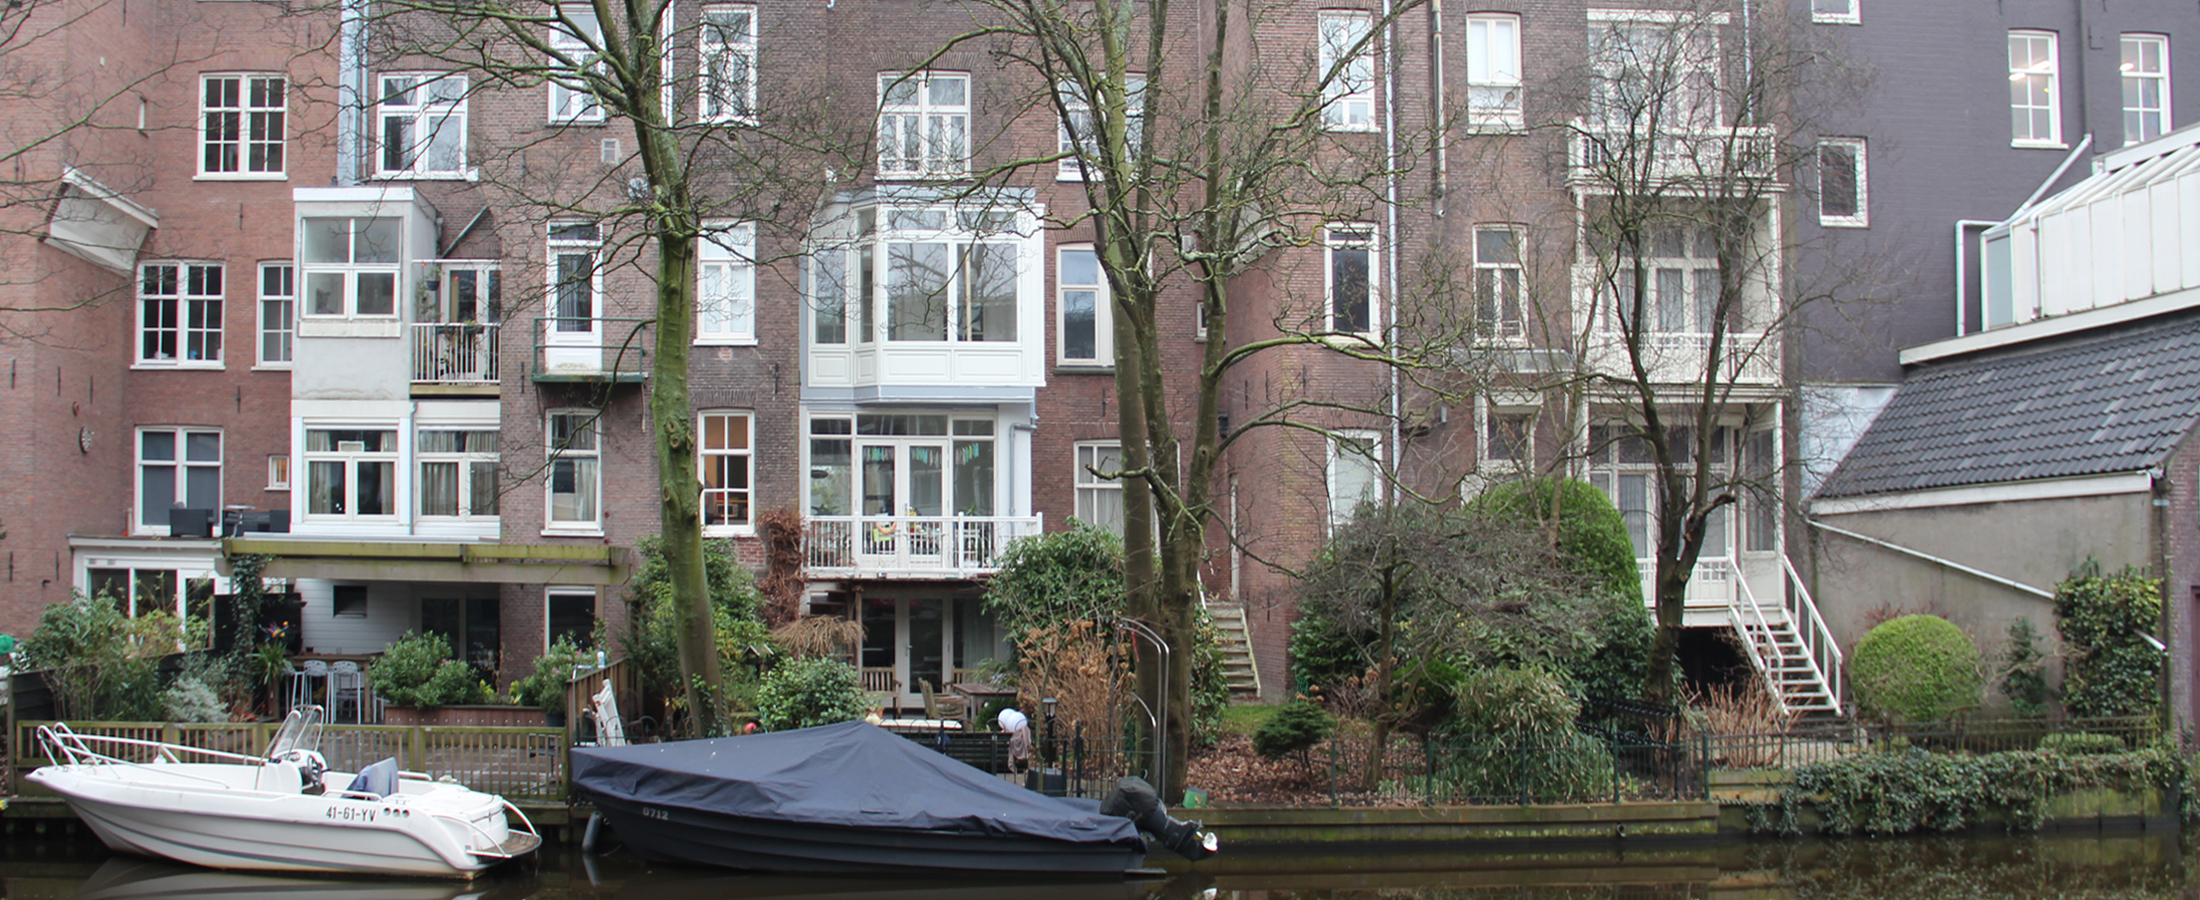 Herenhuis Weteringschans, Amsterdam